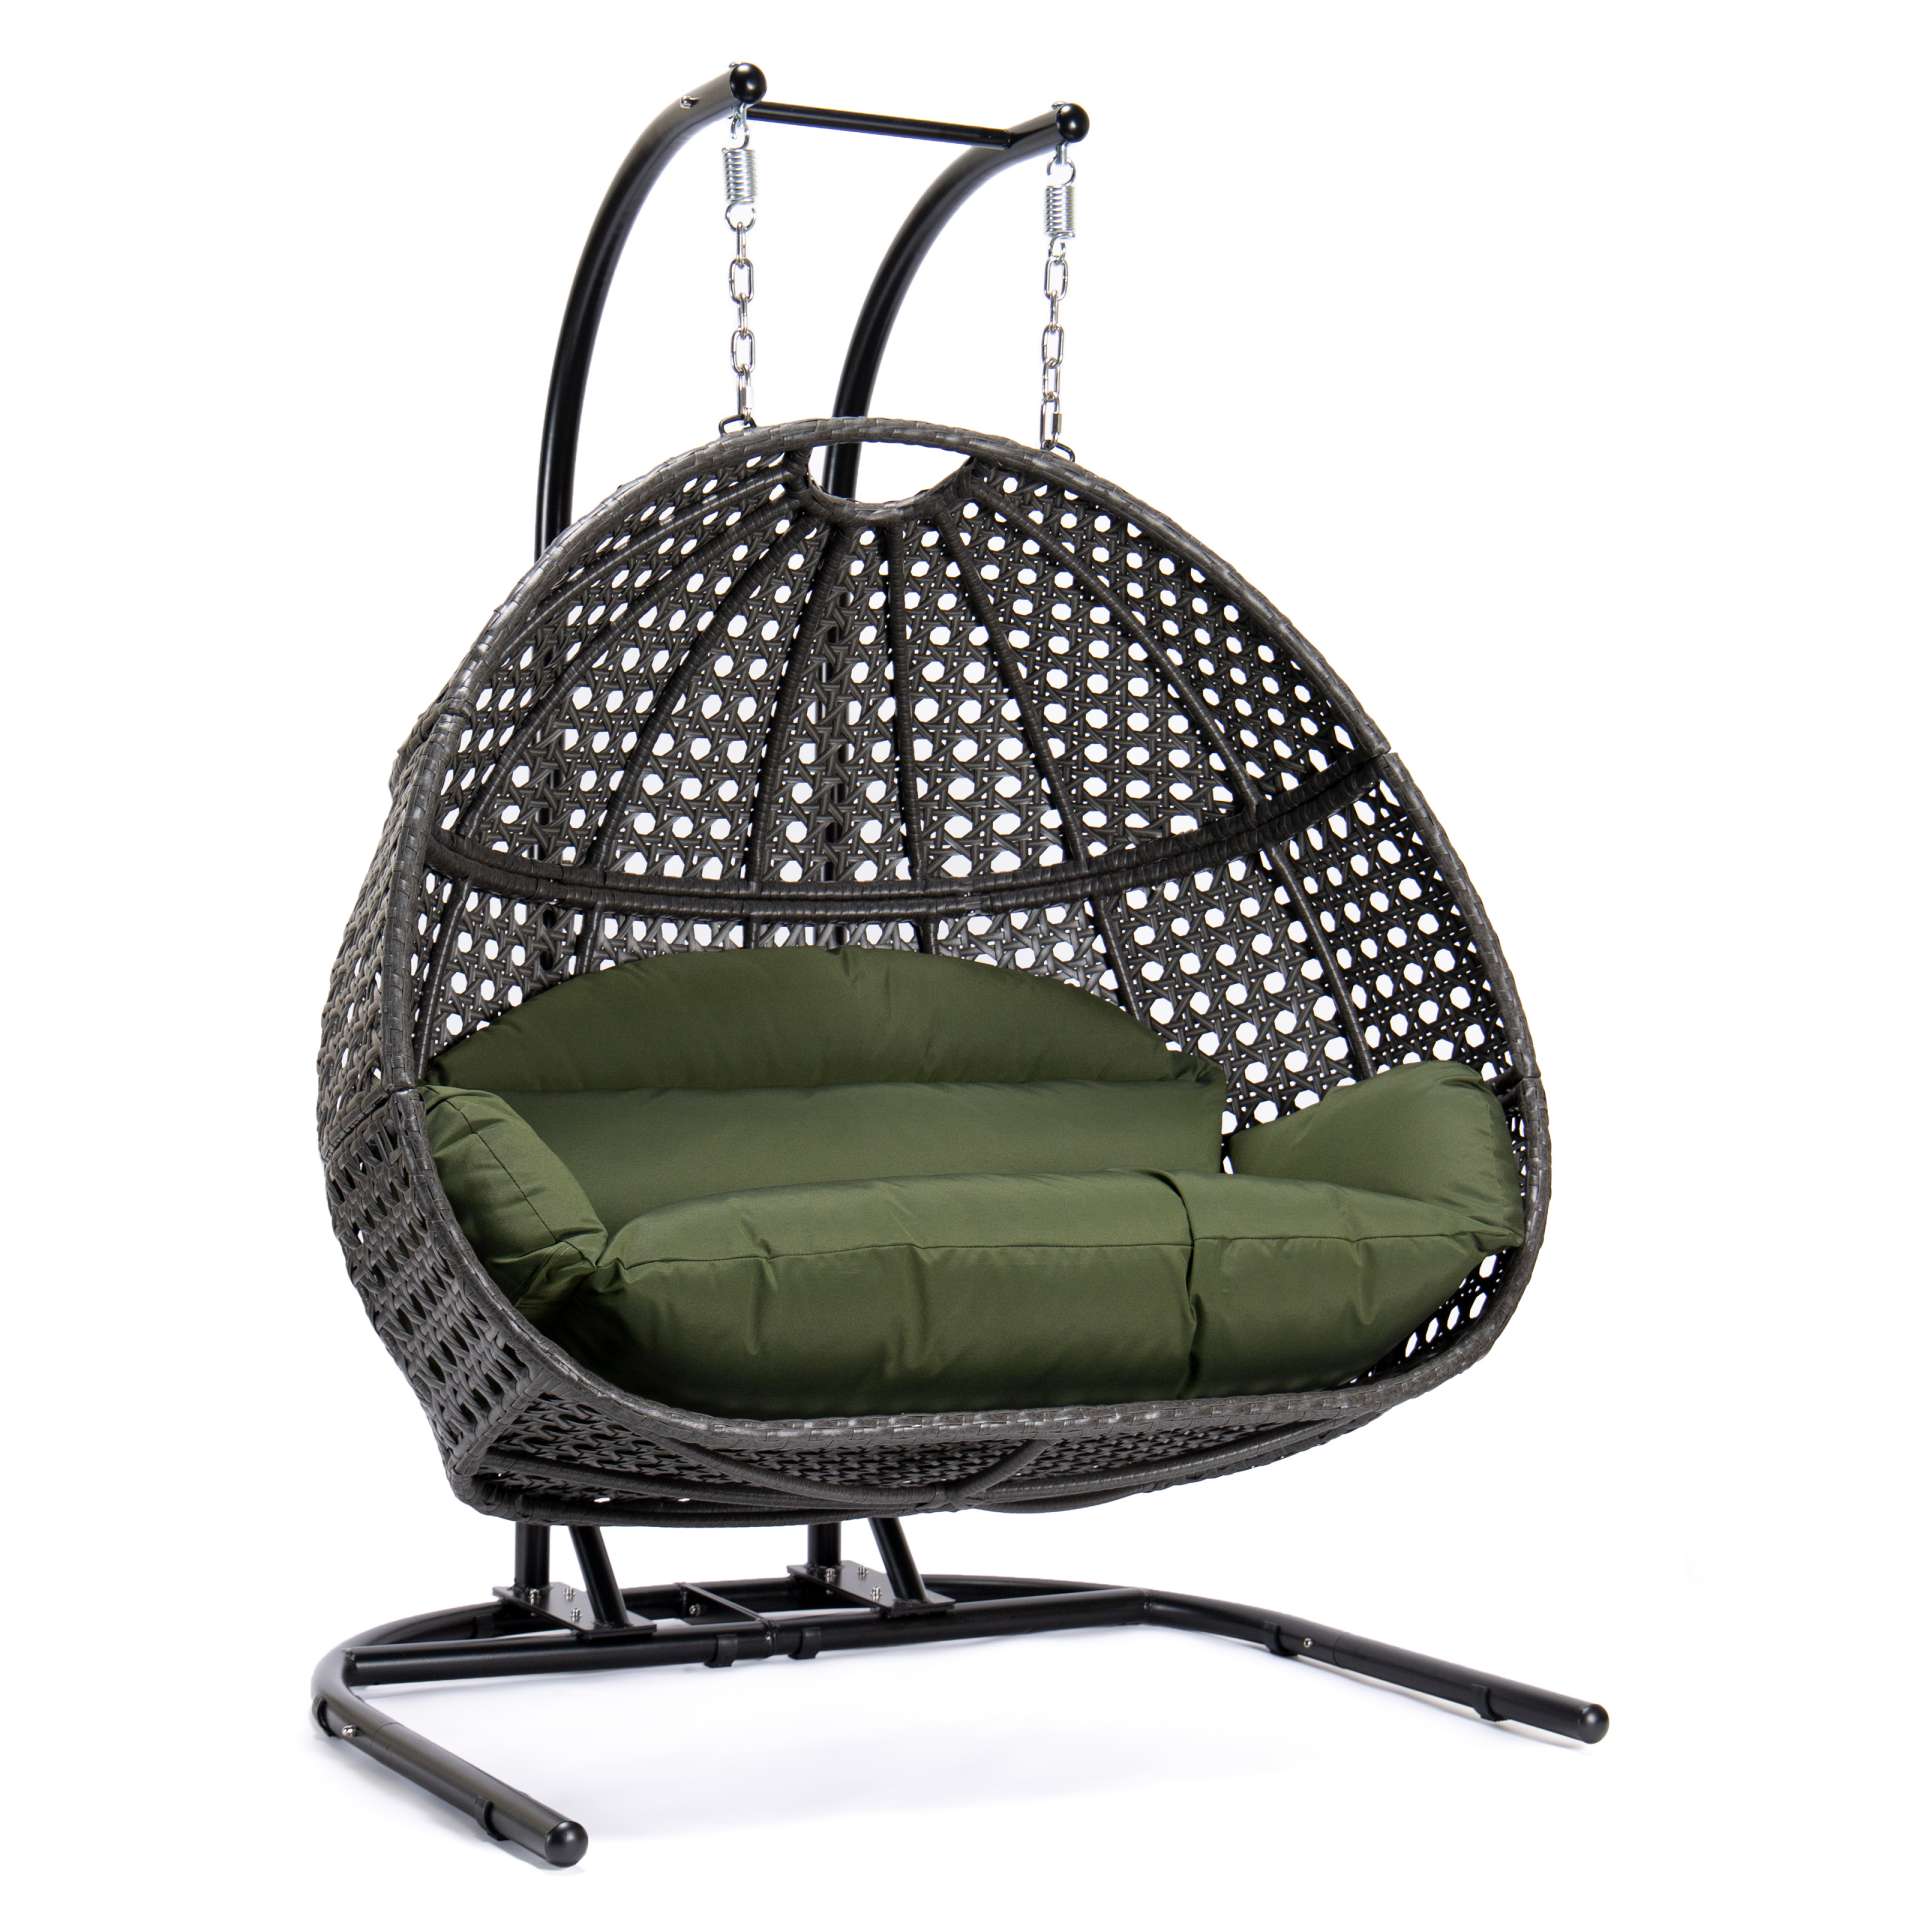 LeisureMod Wicker Hanging Double Egg Swing Chair  - EKDCH-57BR | Outdoor Porch Swings | Modishstore - 19